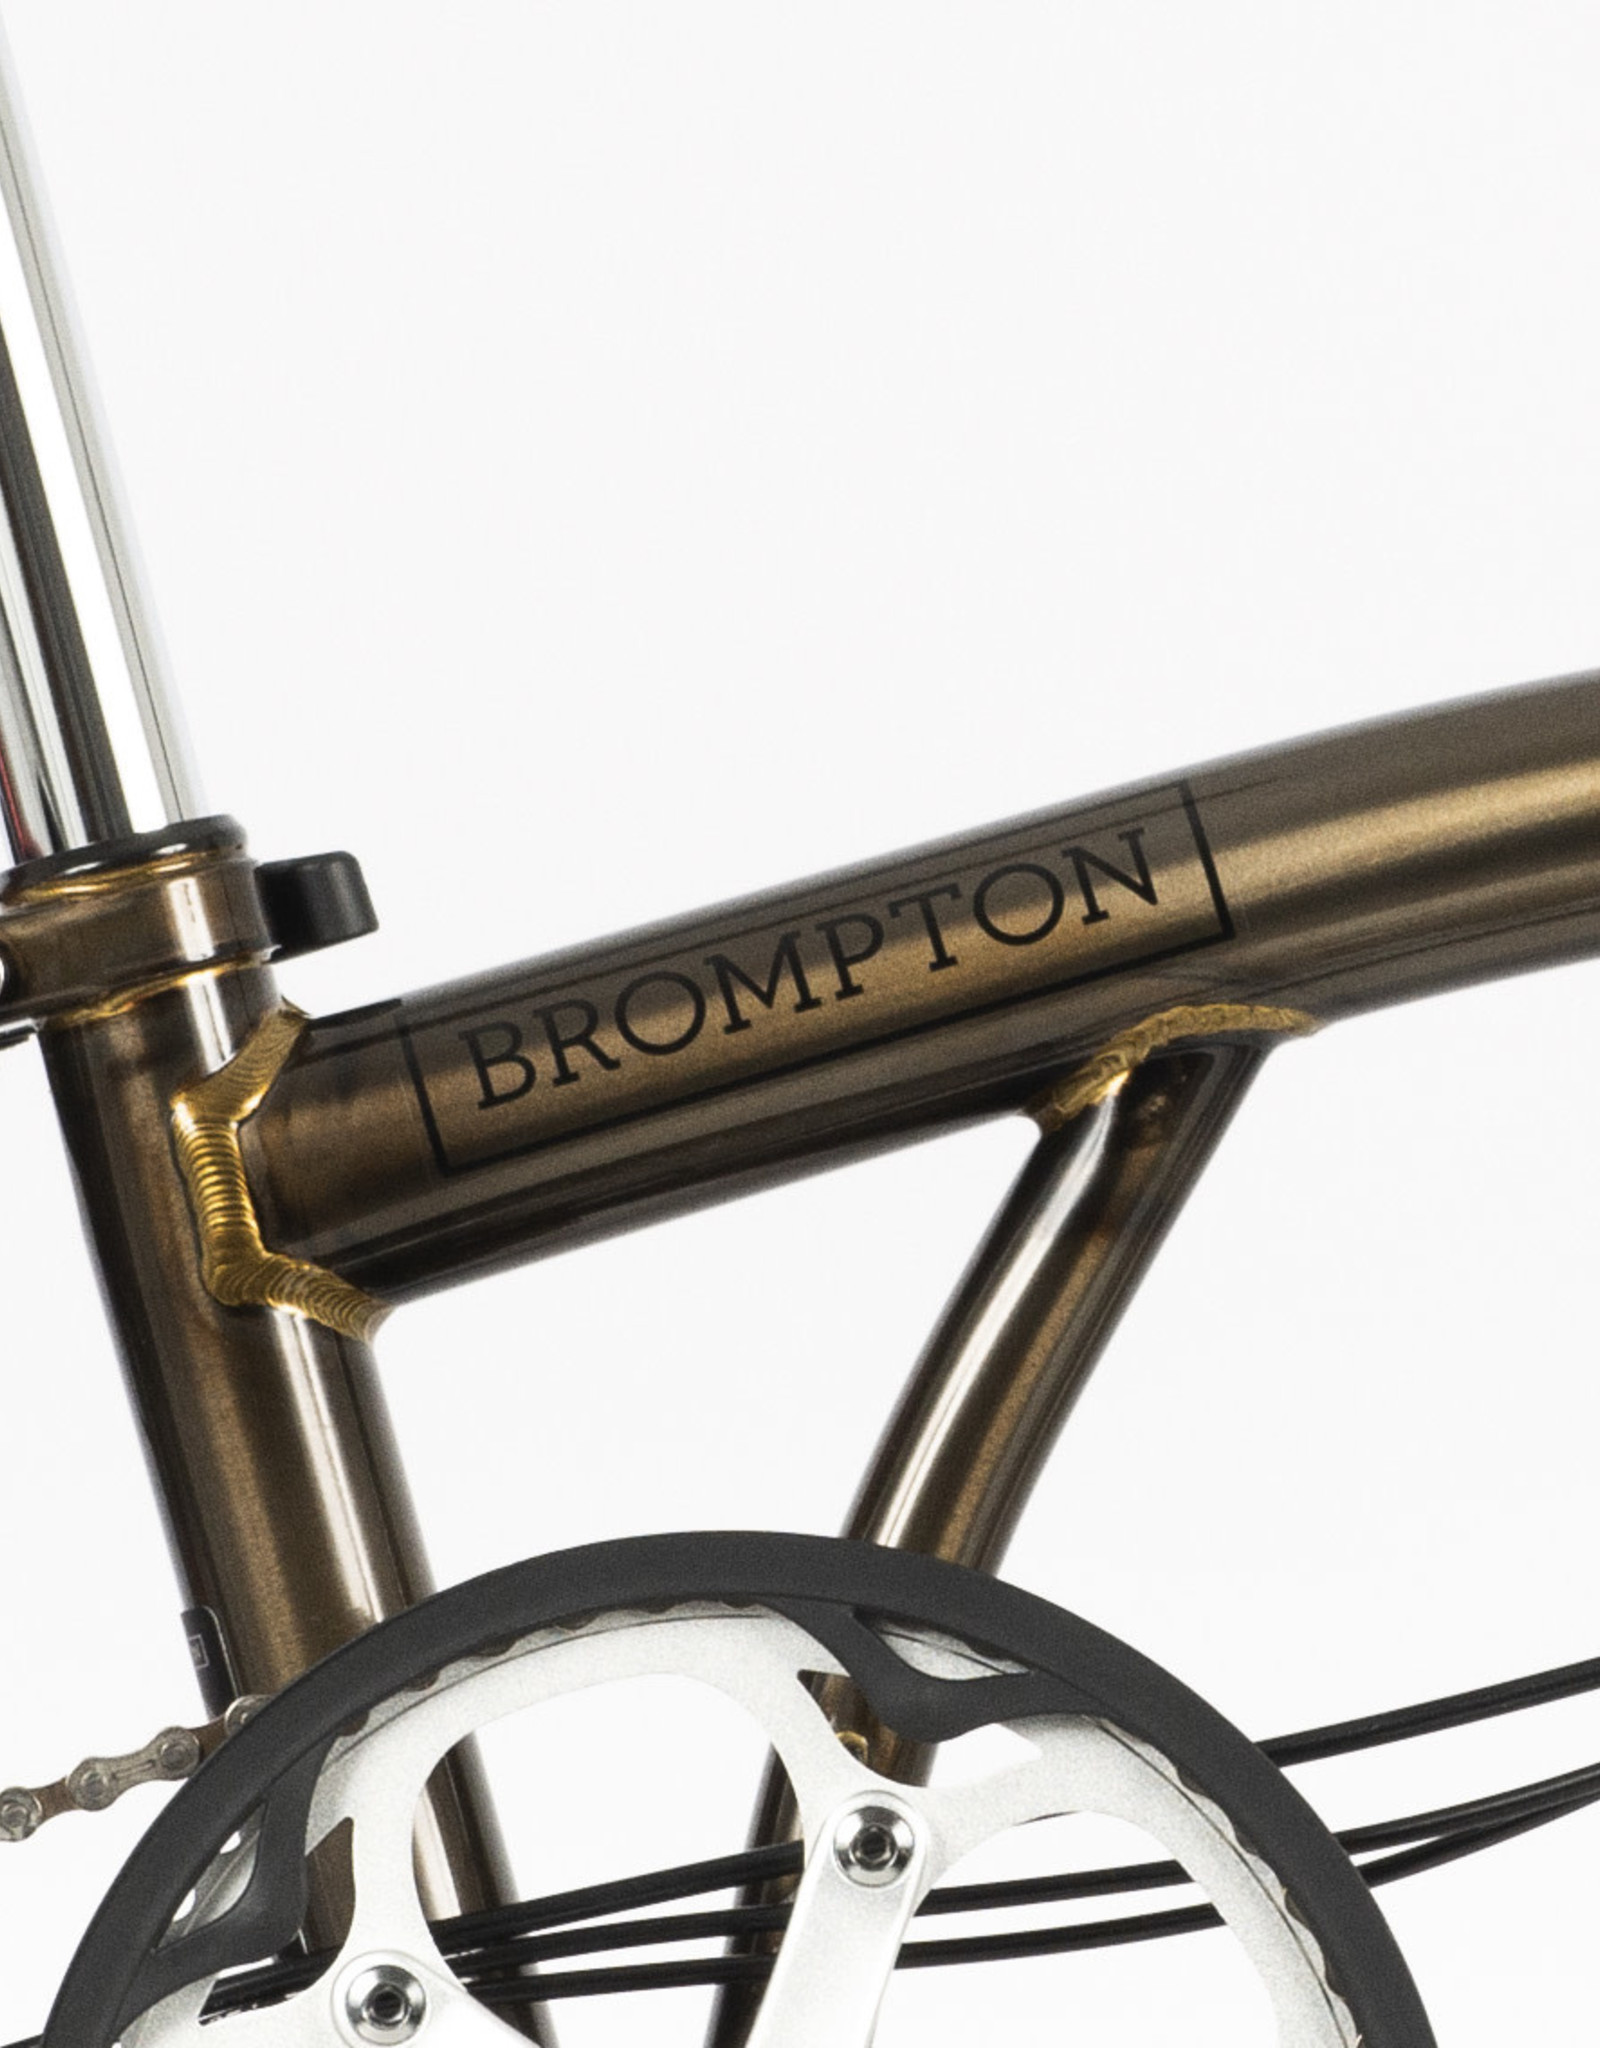 Brompton Brompton - Bike - C Line Explore, Black Lacquer, mid-rise handlebar, rear rack, dynamo, Brooks B17 Special Short saddle.